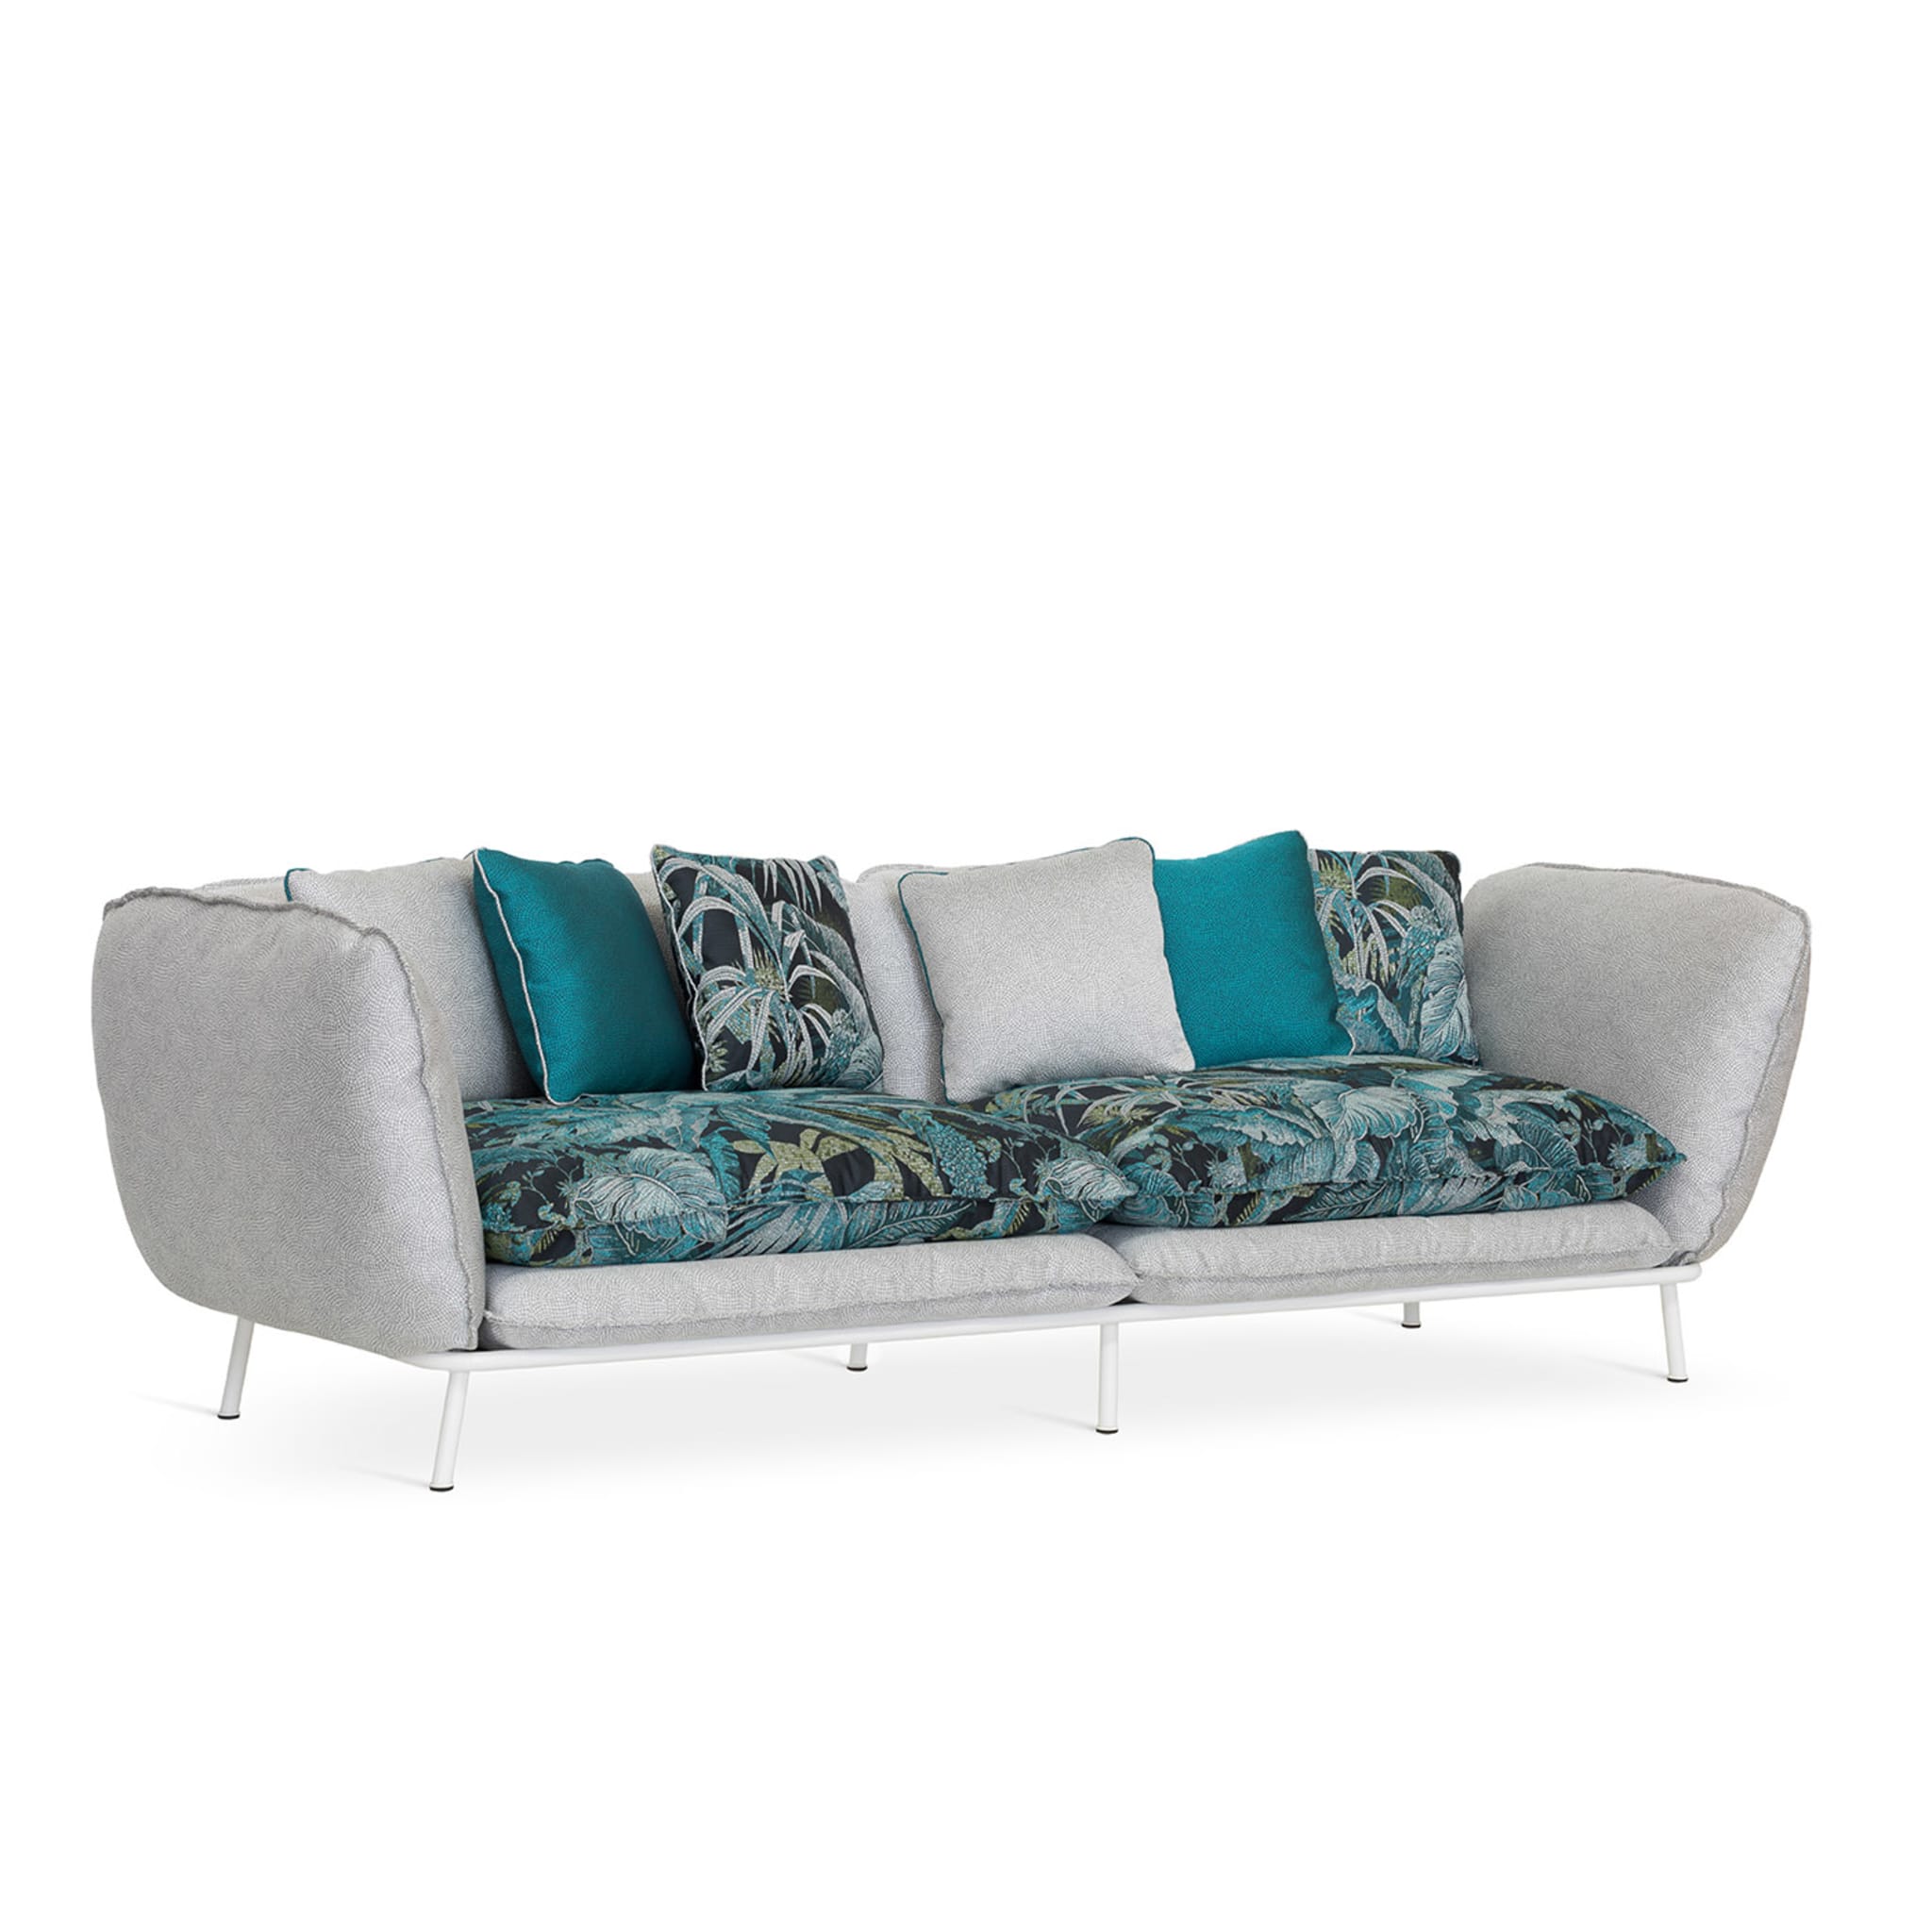 Lipari Outdoor 2-Seat Sofa by Massimiliano Raggi - Alternative view 3